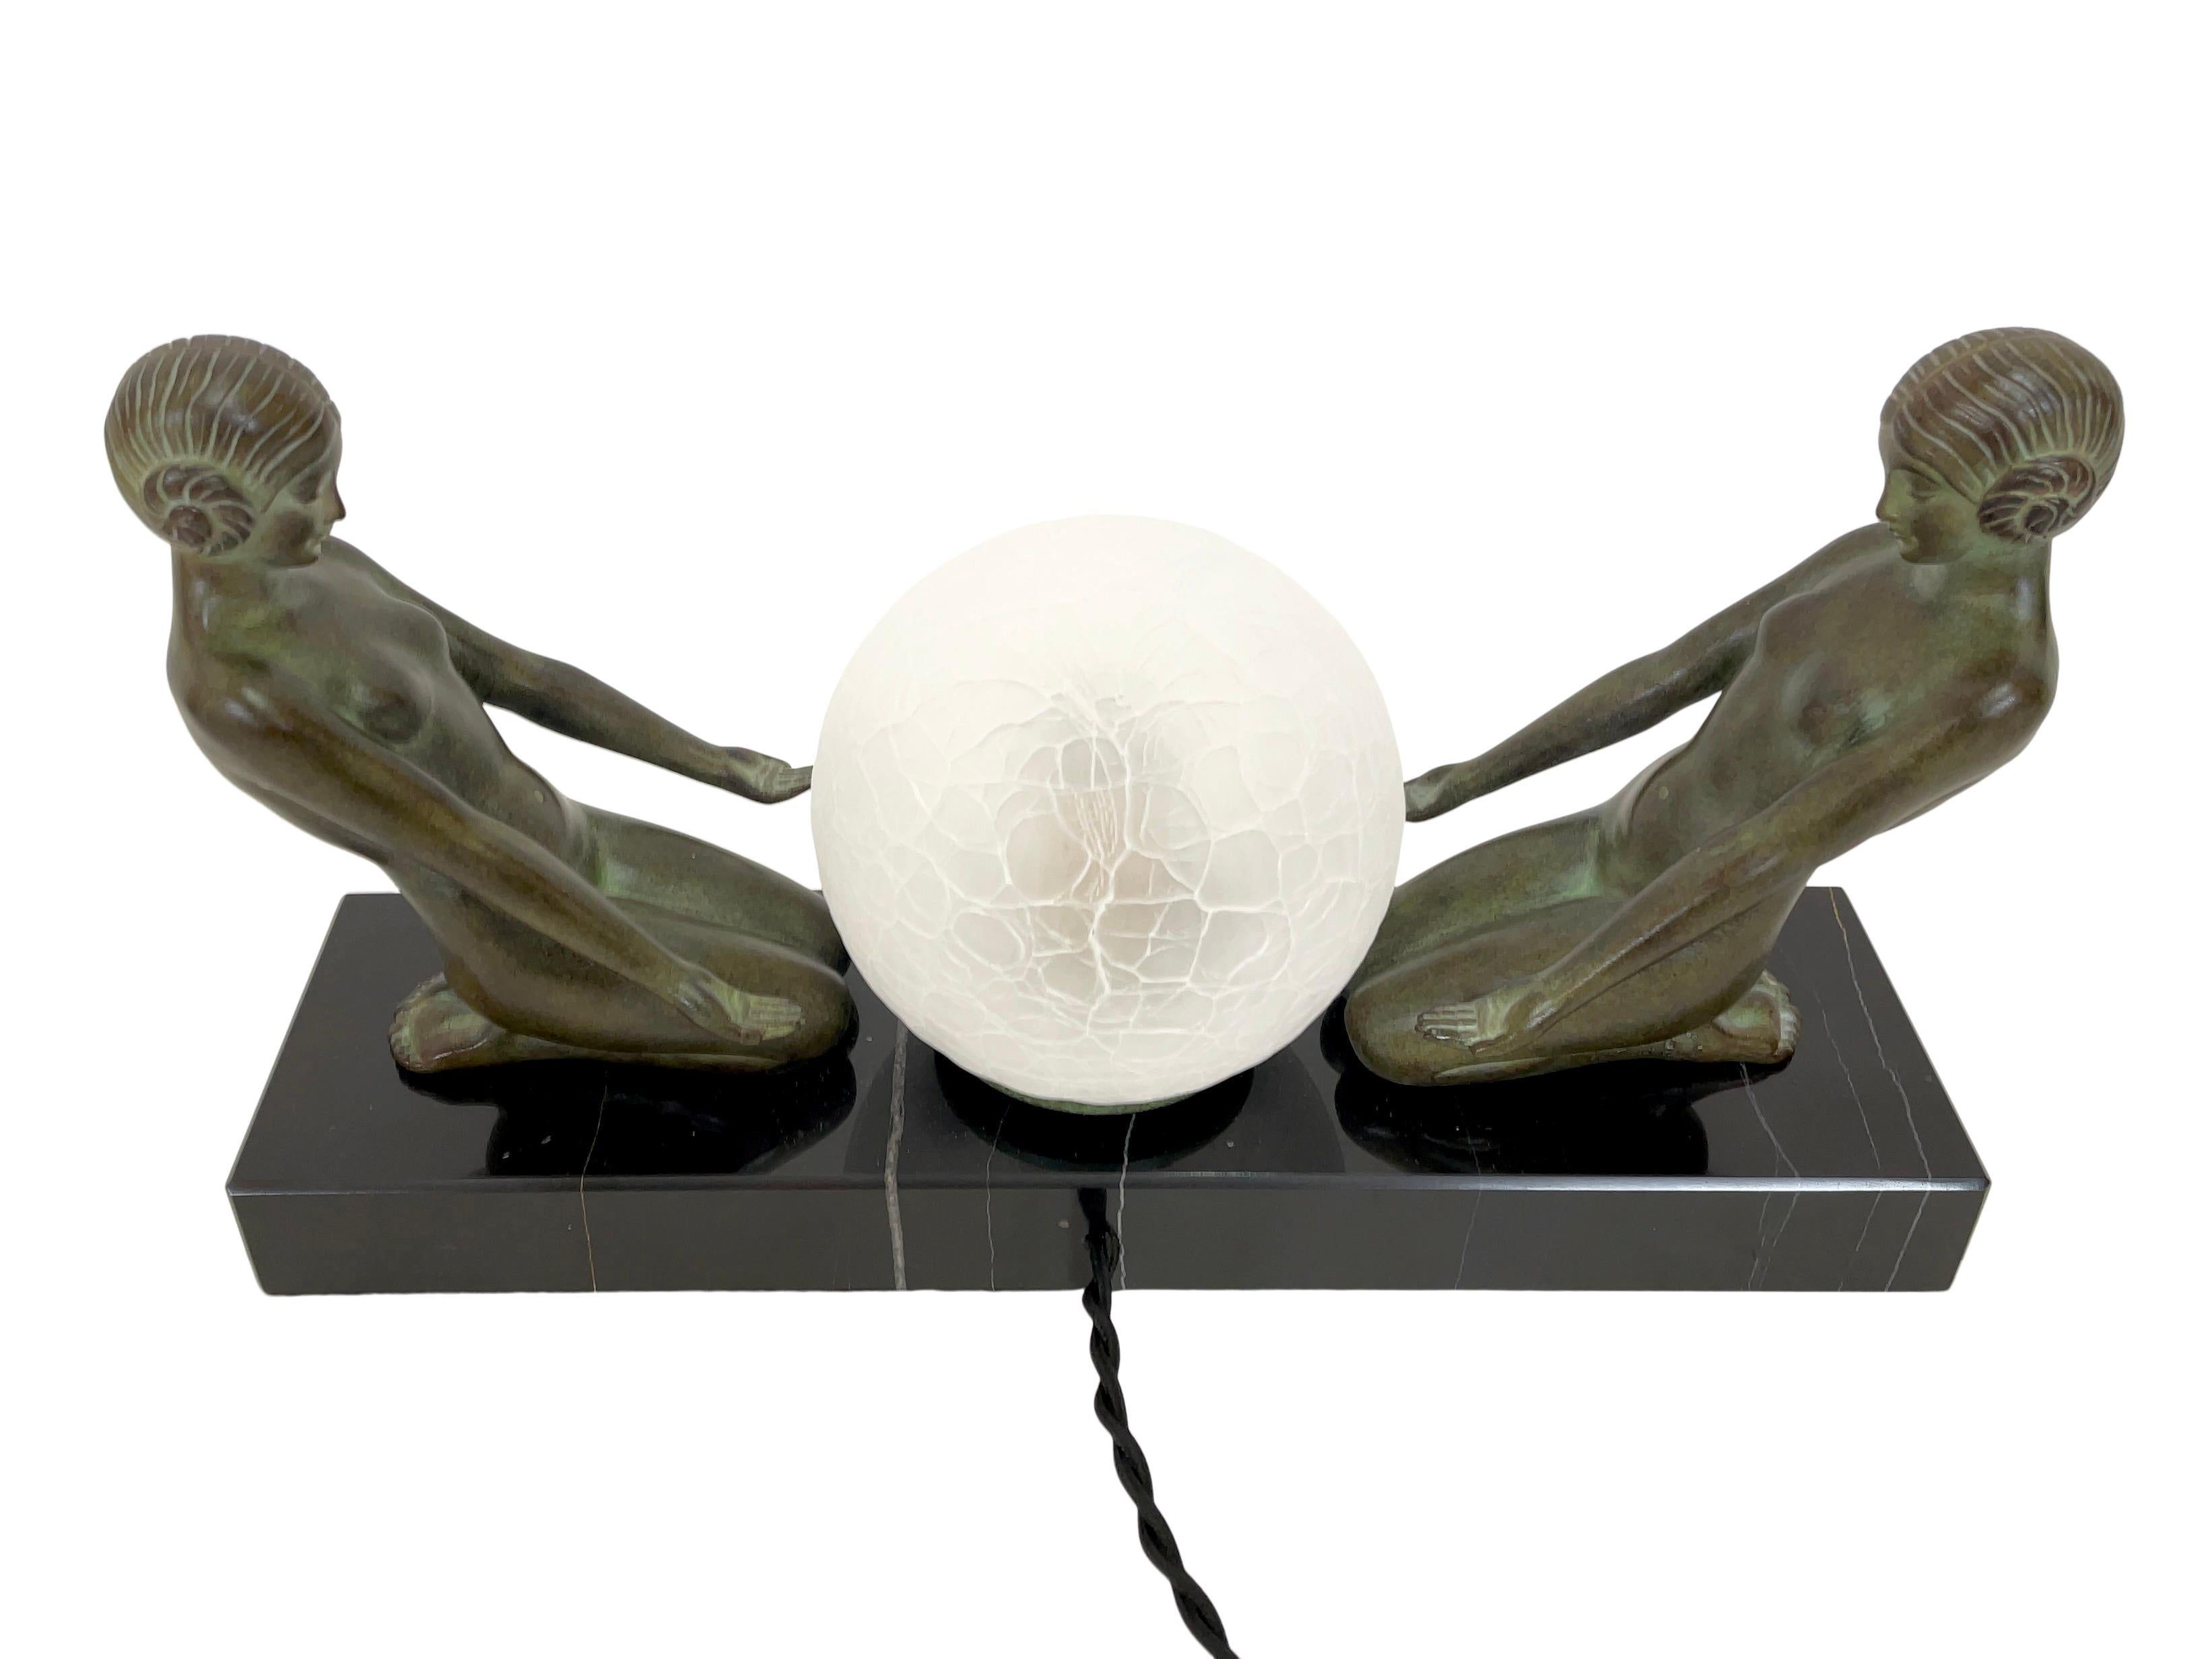 CUEILLETTE LUMINEUX beleuchtetes Figurenpaar von Max Le Verrier

Original Max Le Verrier
Zeitgenössische Skulptur im Art-déco-Stil
Farbe patinierte weiße Bronze und Marmor

Handgefertigt, tatsächliche Farbe der Patina und Marmorierung kann von